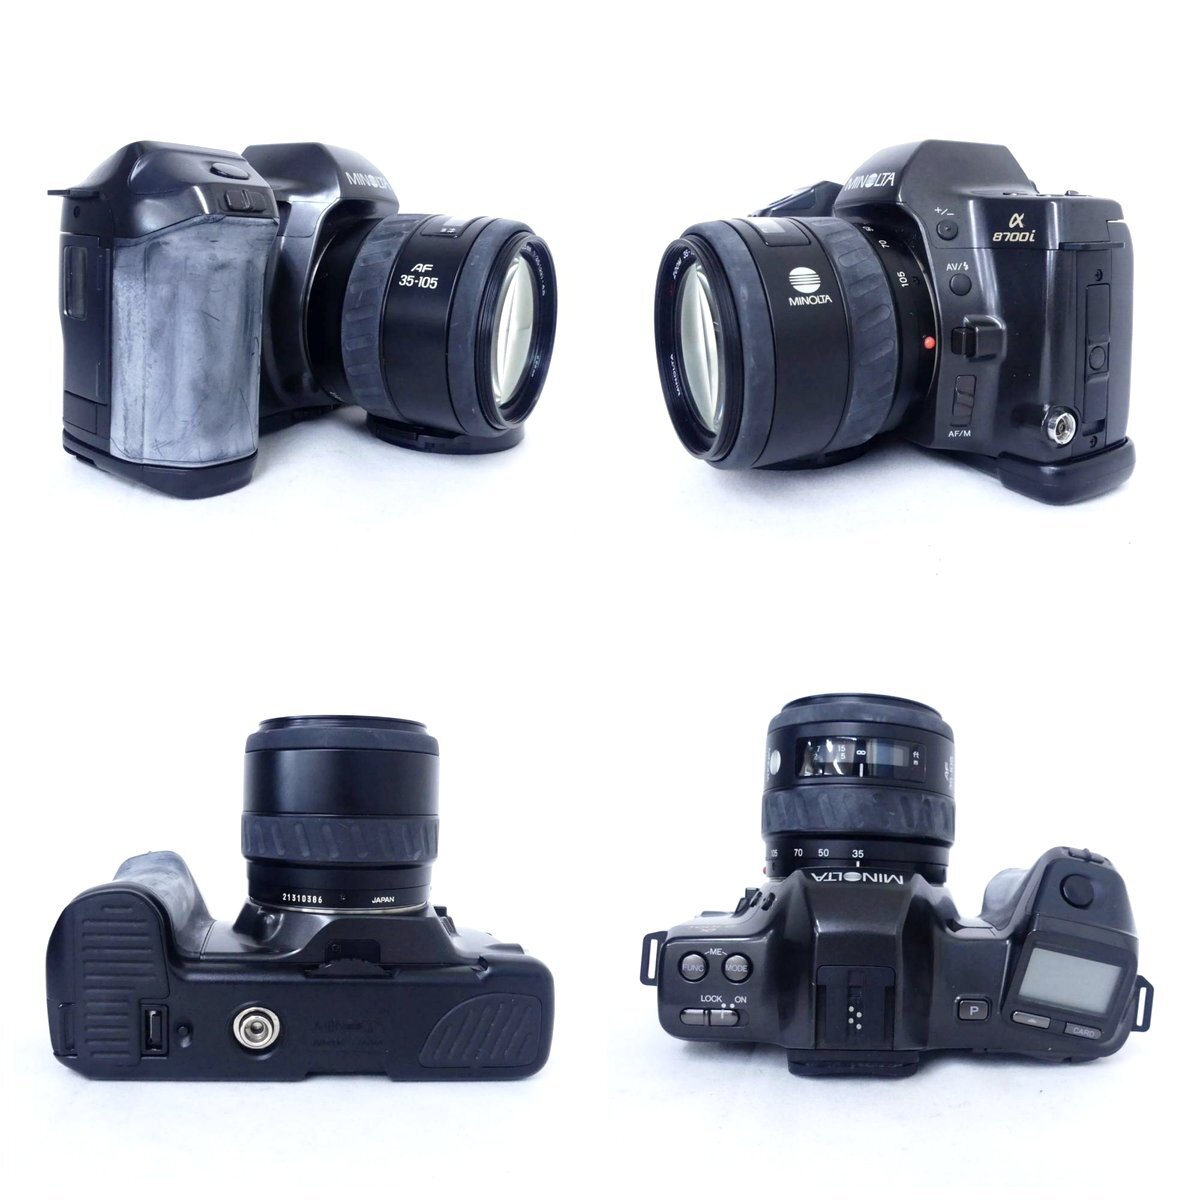 MINOLTA ミノルタ α 8700i + AF ZOOM 35-105mm F3.5-4.5 フィルムカメラ、3500xi ストロボ 現状品 USED /2405Cの画像2